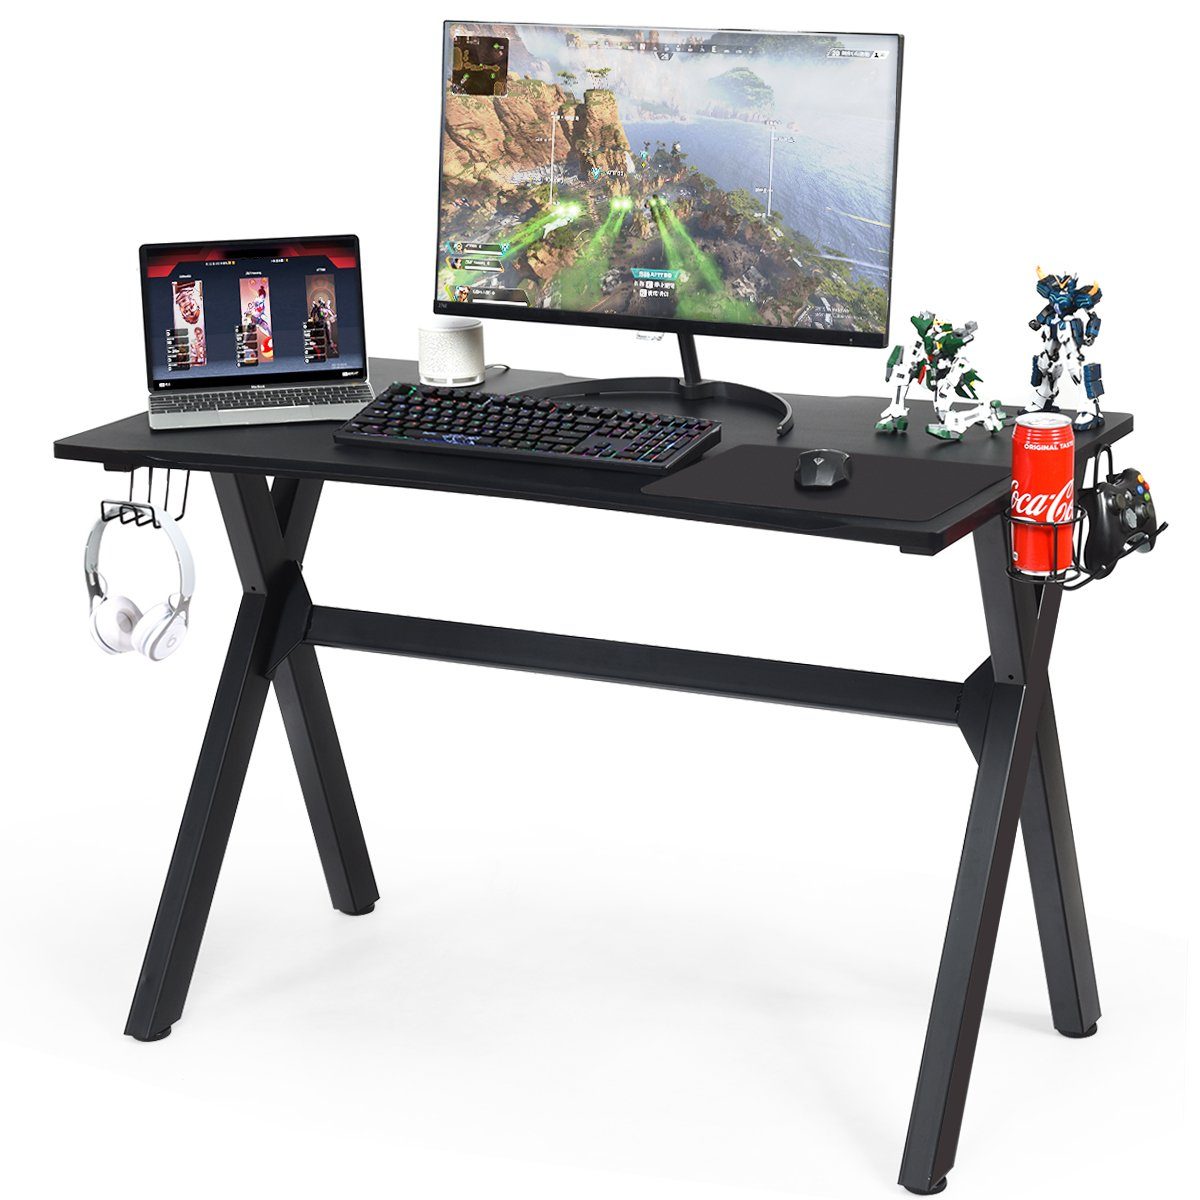 COSTWAY Gamingtisch, mit Mauspad & Kabelführungslöcher, Stahlrahmen, 115cm | Computertische